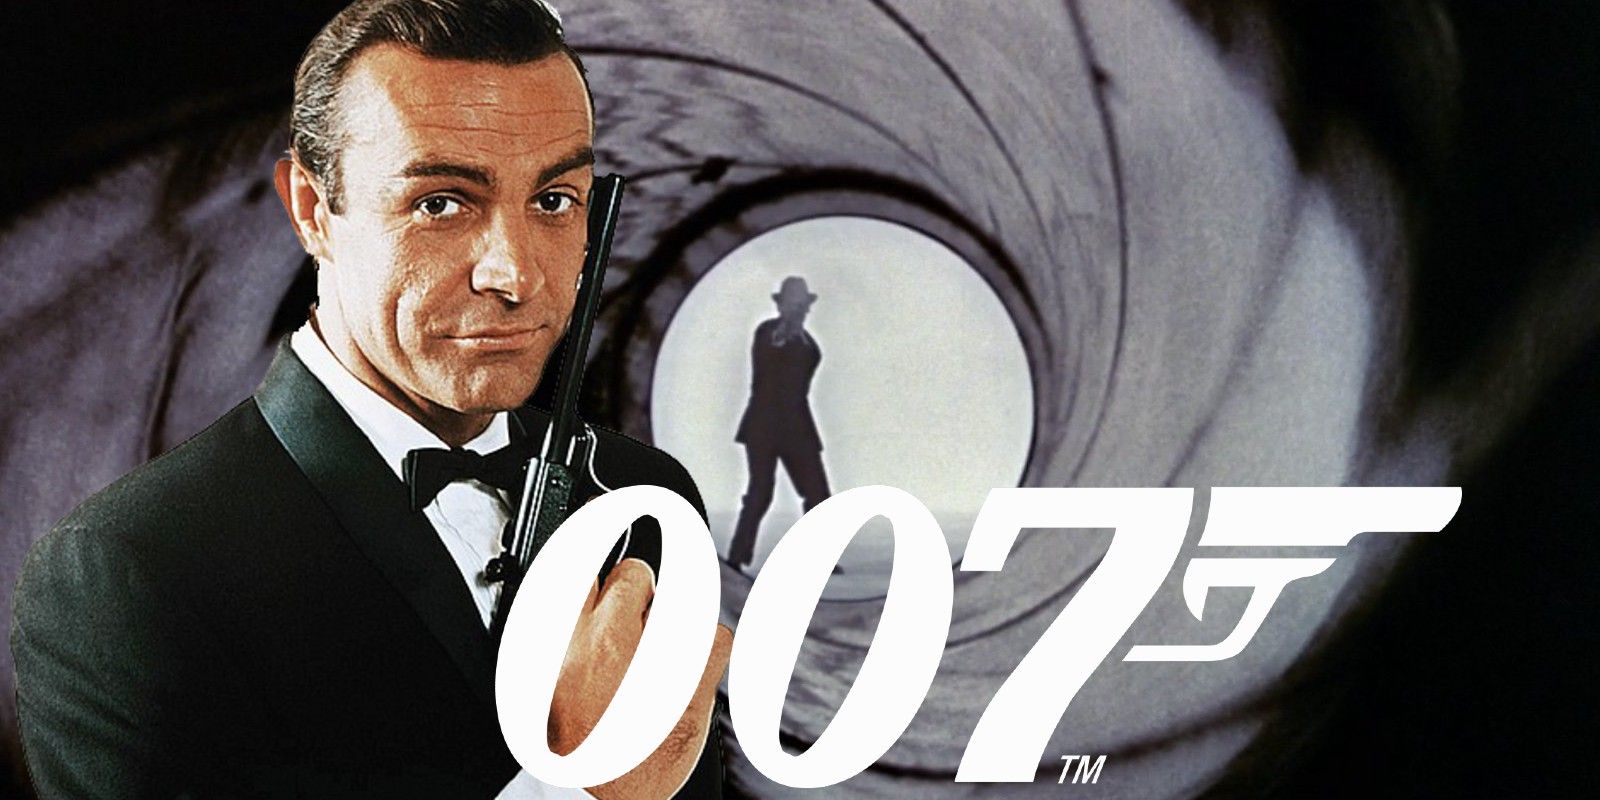 Sean Connery as James Bond Gun Barrel